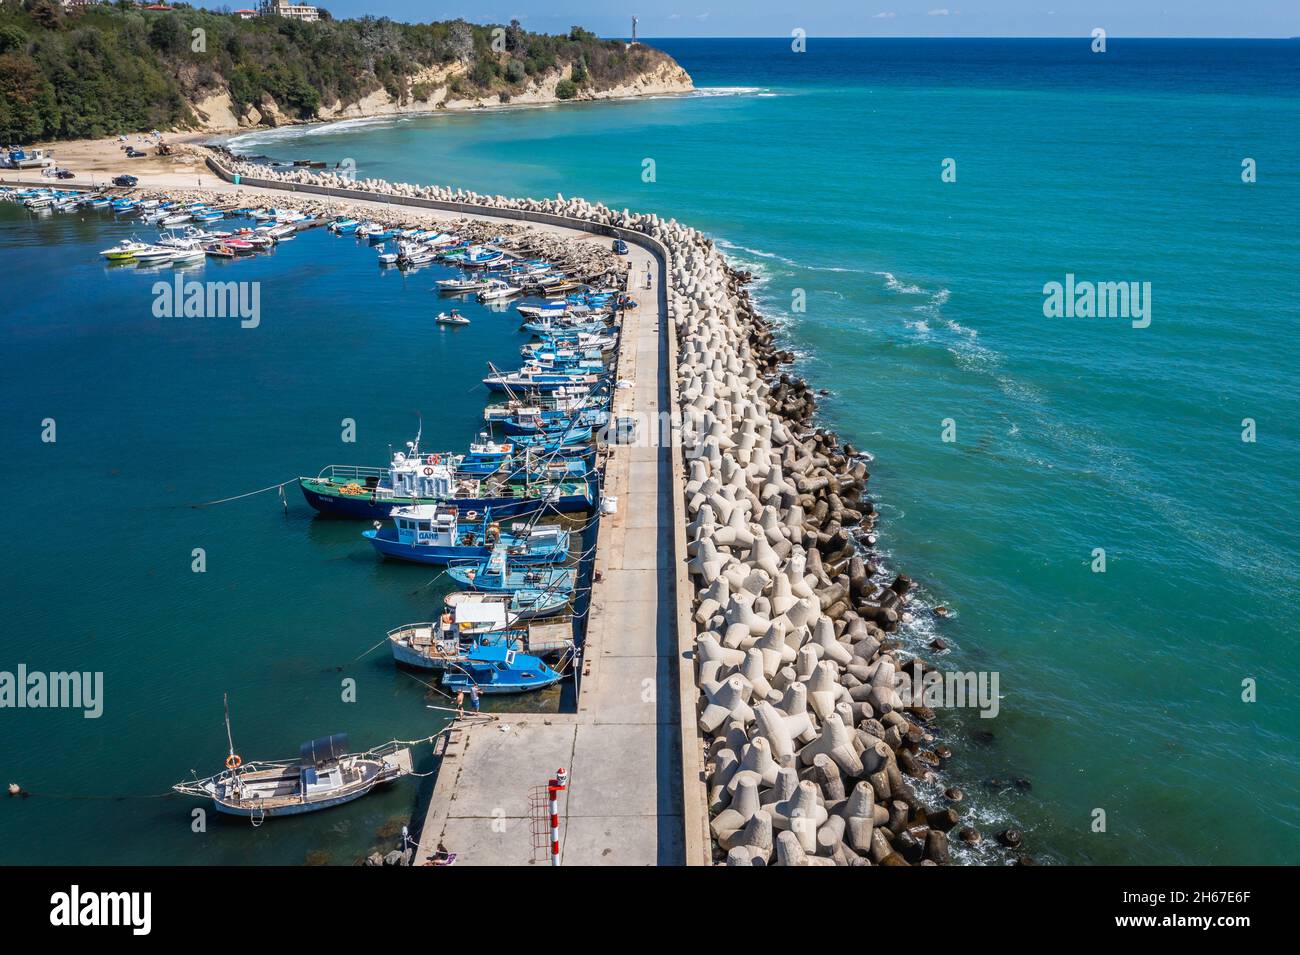 Port de la ville de Byala et station balnéaire dans l'est de la Bulgarie, située sur la côte bulgare de la mer Noire dans la province de Varna, Bulgarie Banque D'Images